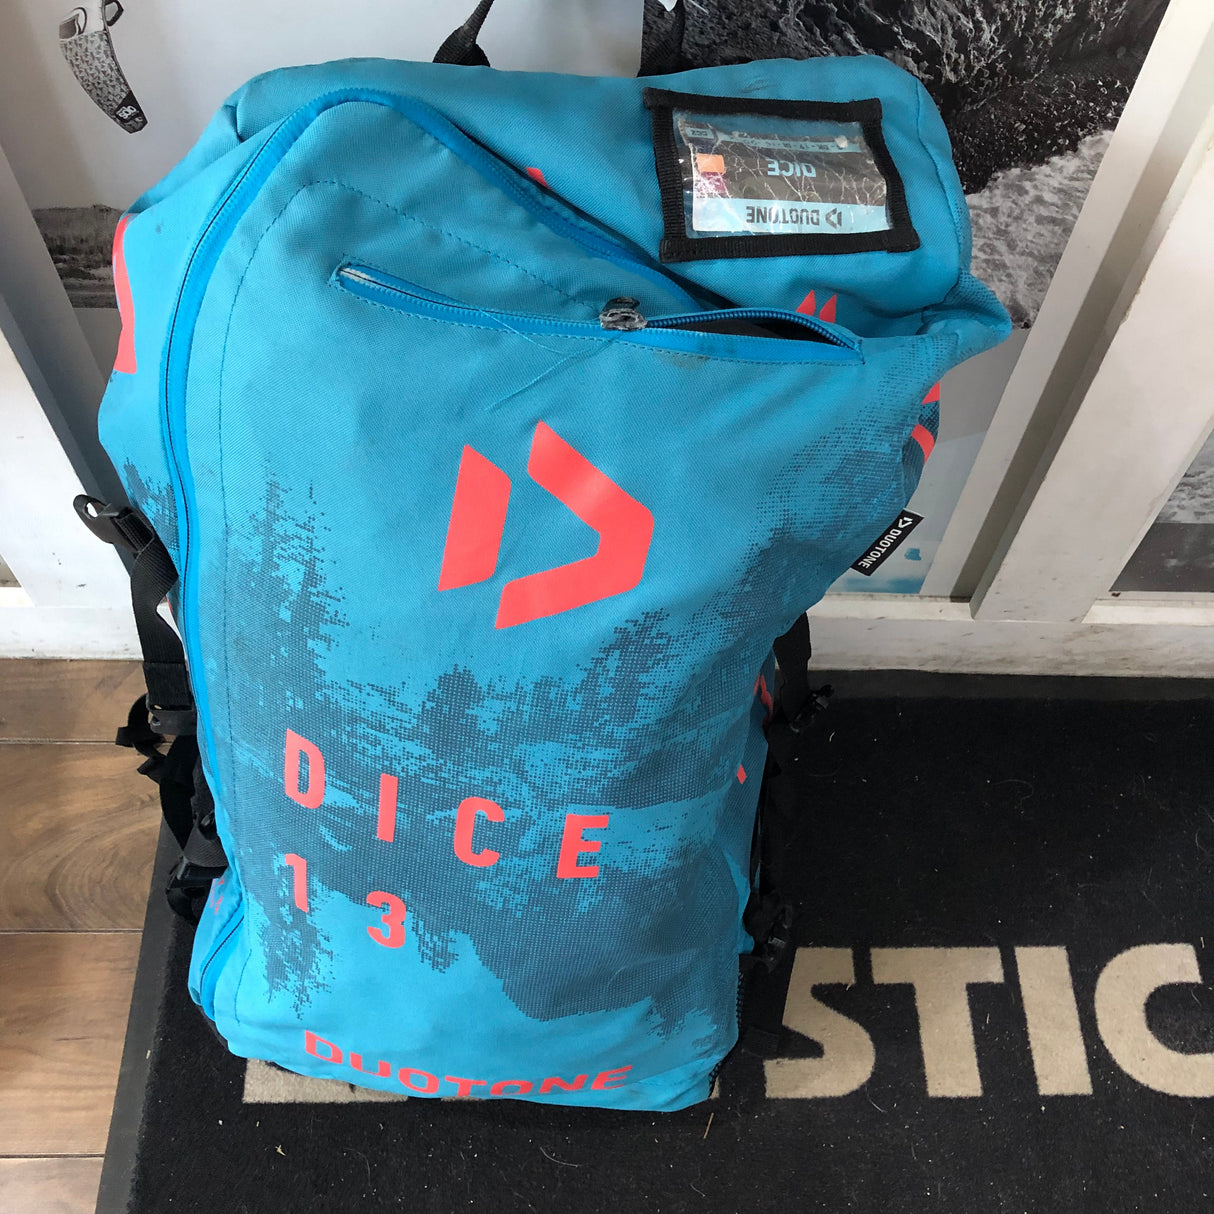 2019 Duotone Dice 13m Kite Used